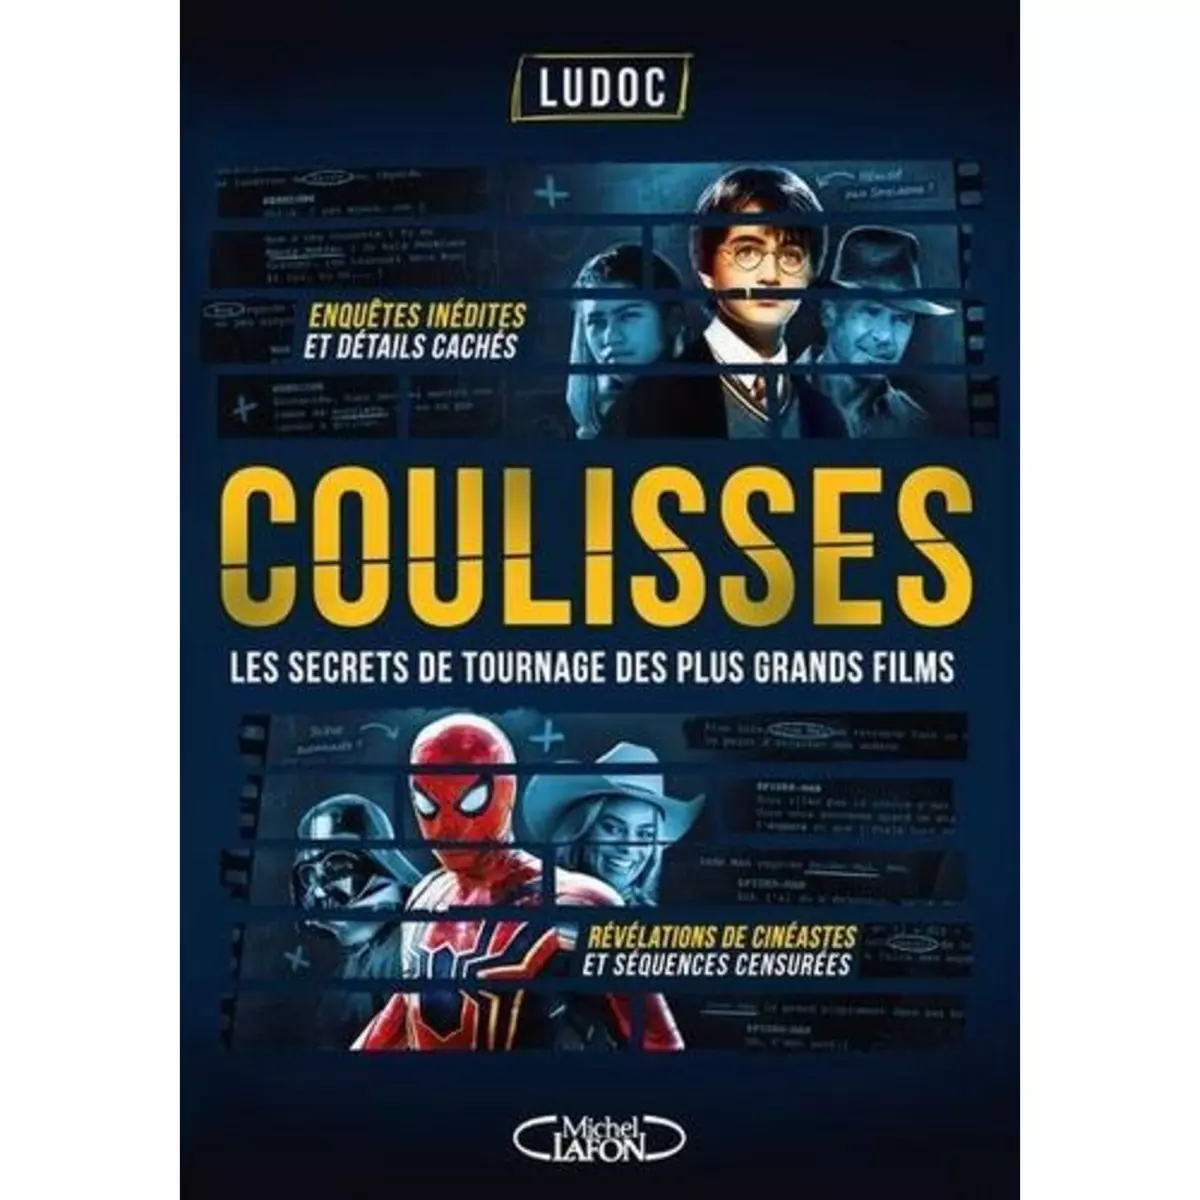  COULISSES. LES SECRETS DE TOURNAGE DES PLUS GRANDS FILMS, Ludoc